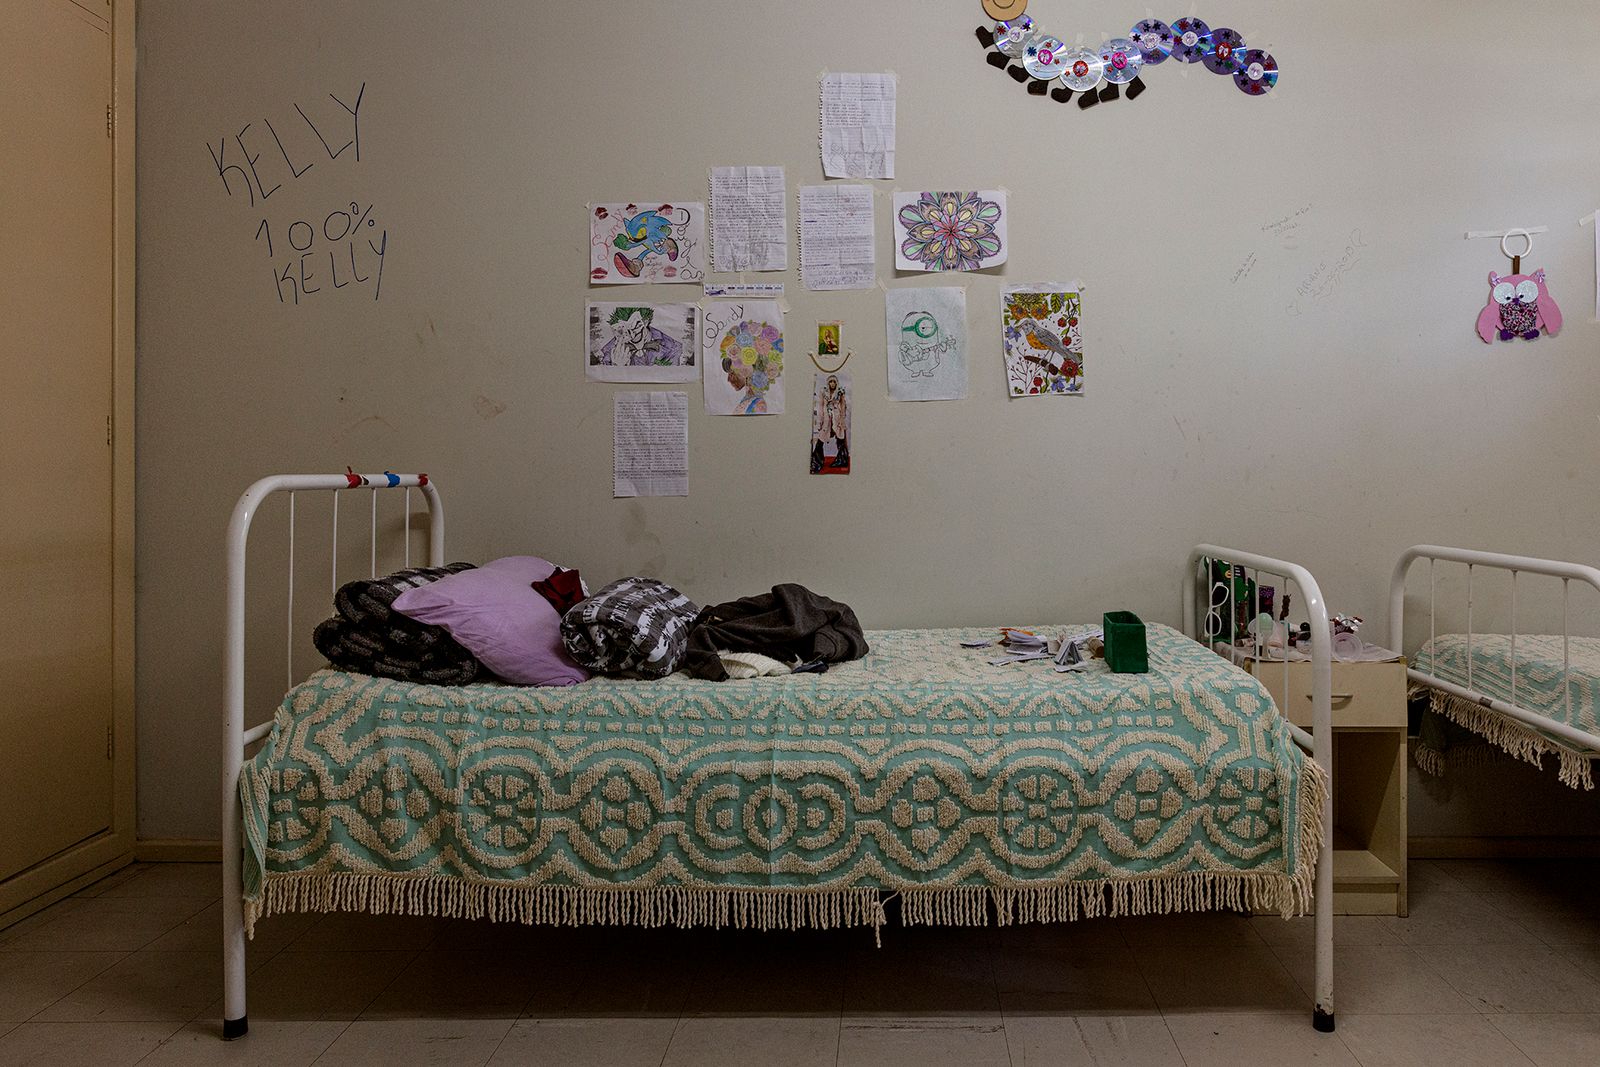 © Gui Christ - A public rehab dormitory